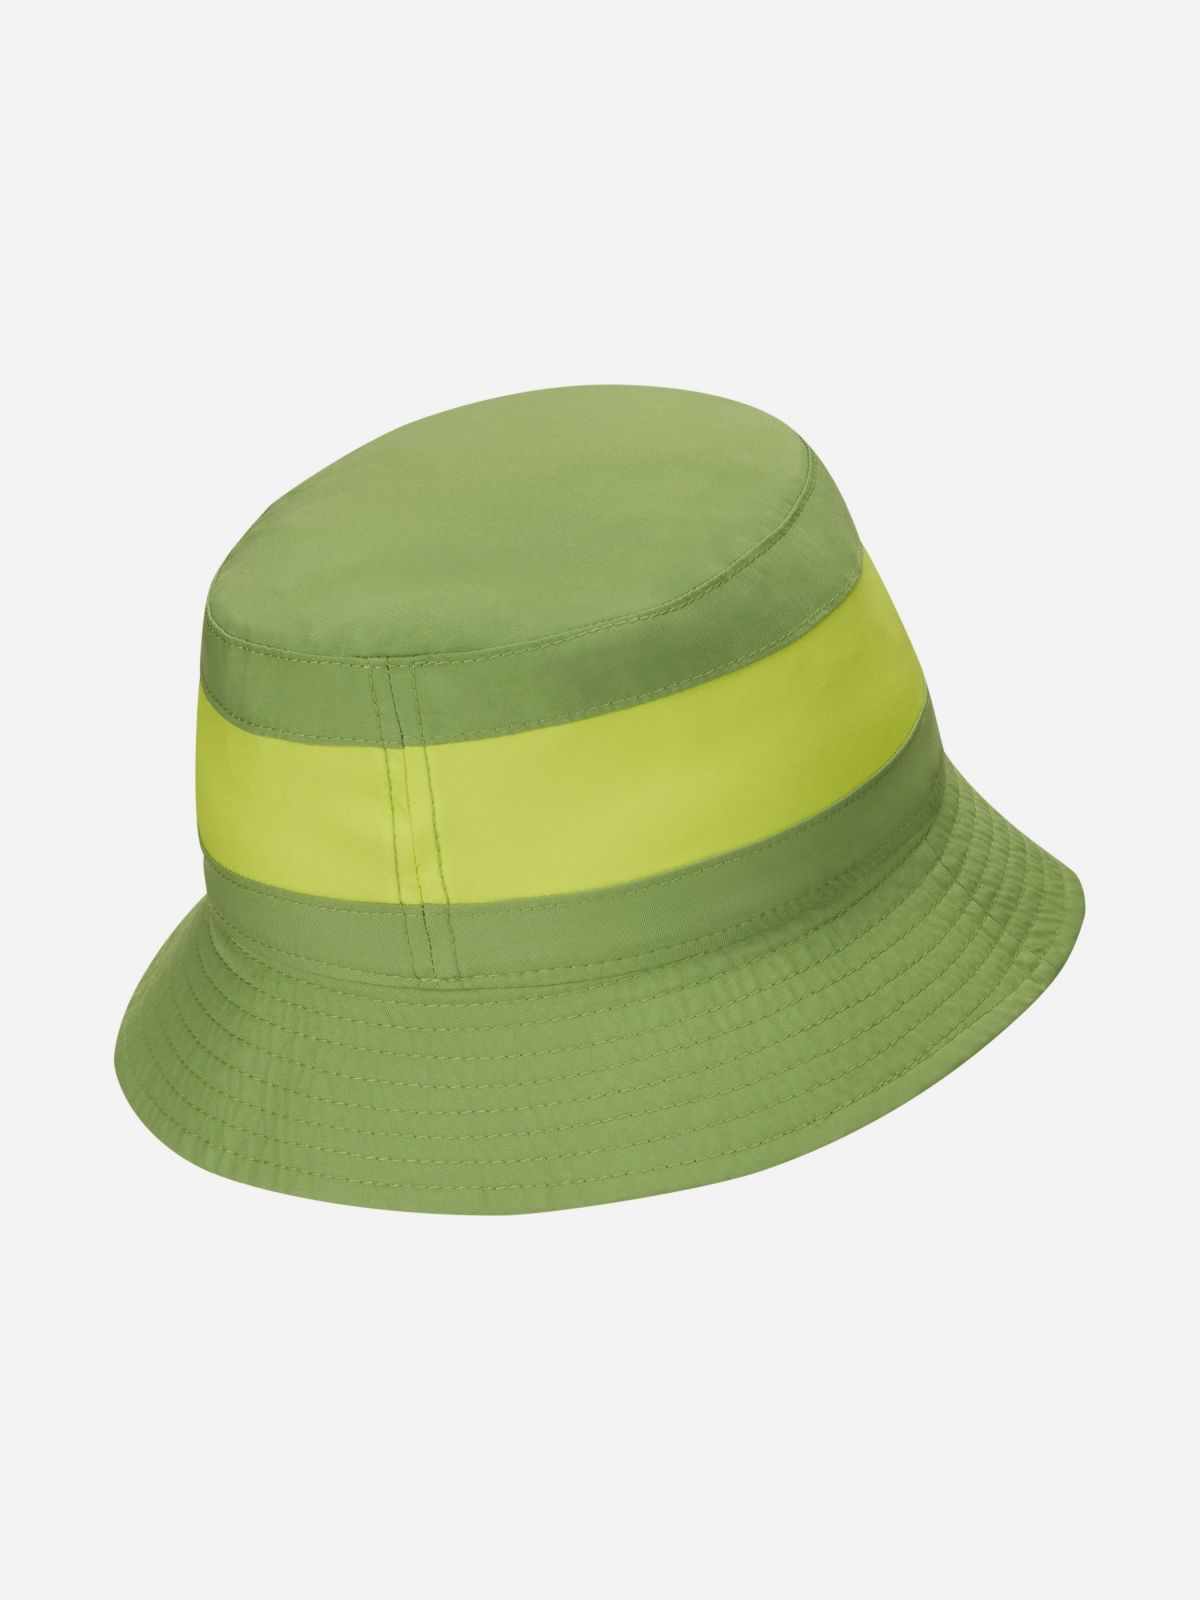  כובע באקט בהדפס דו צדדי / בנים של NIKE